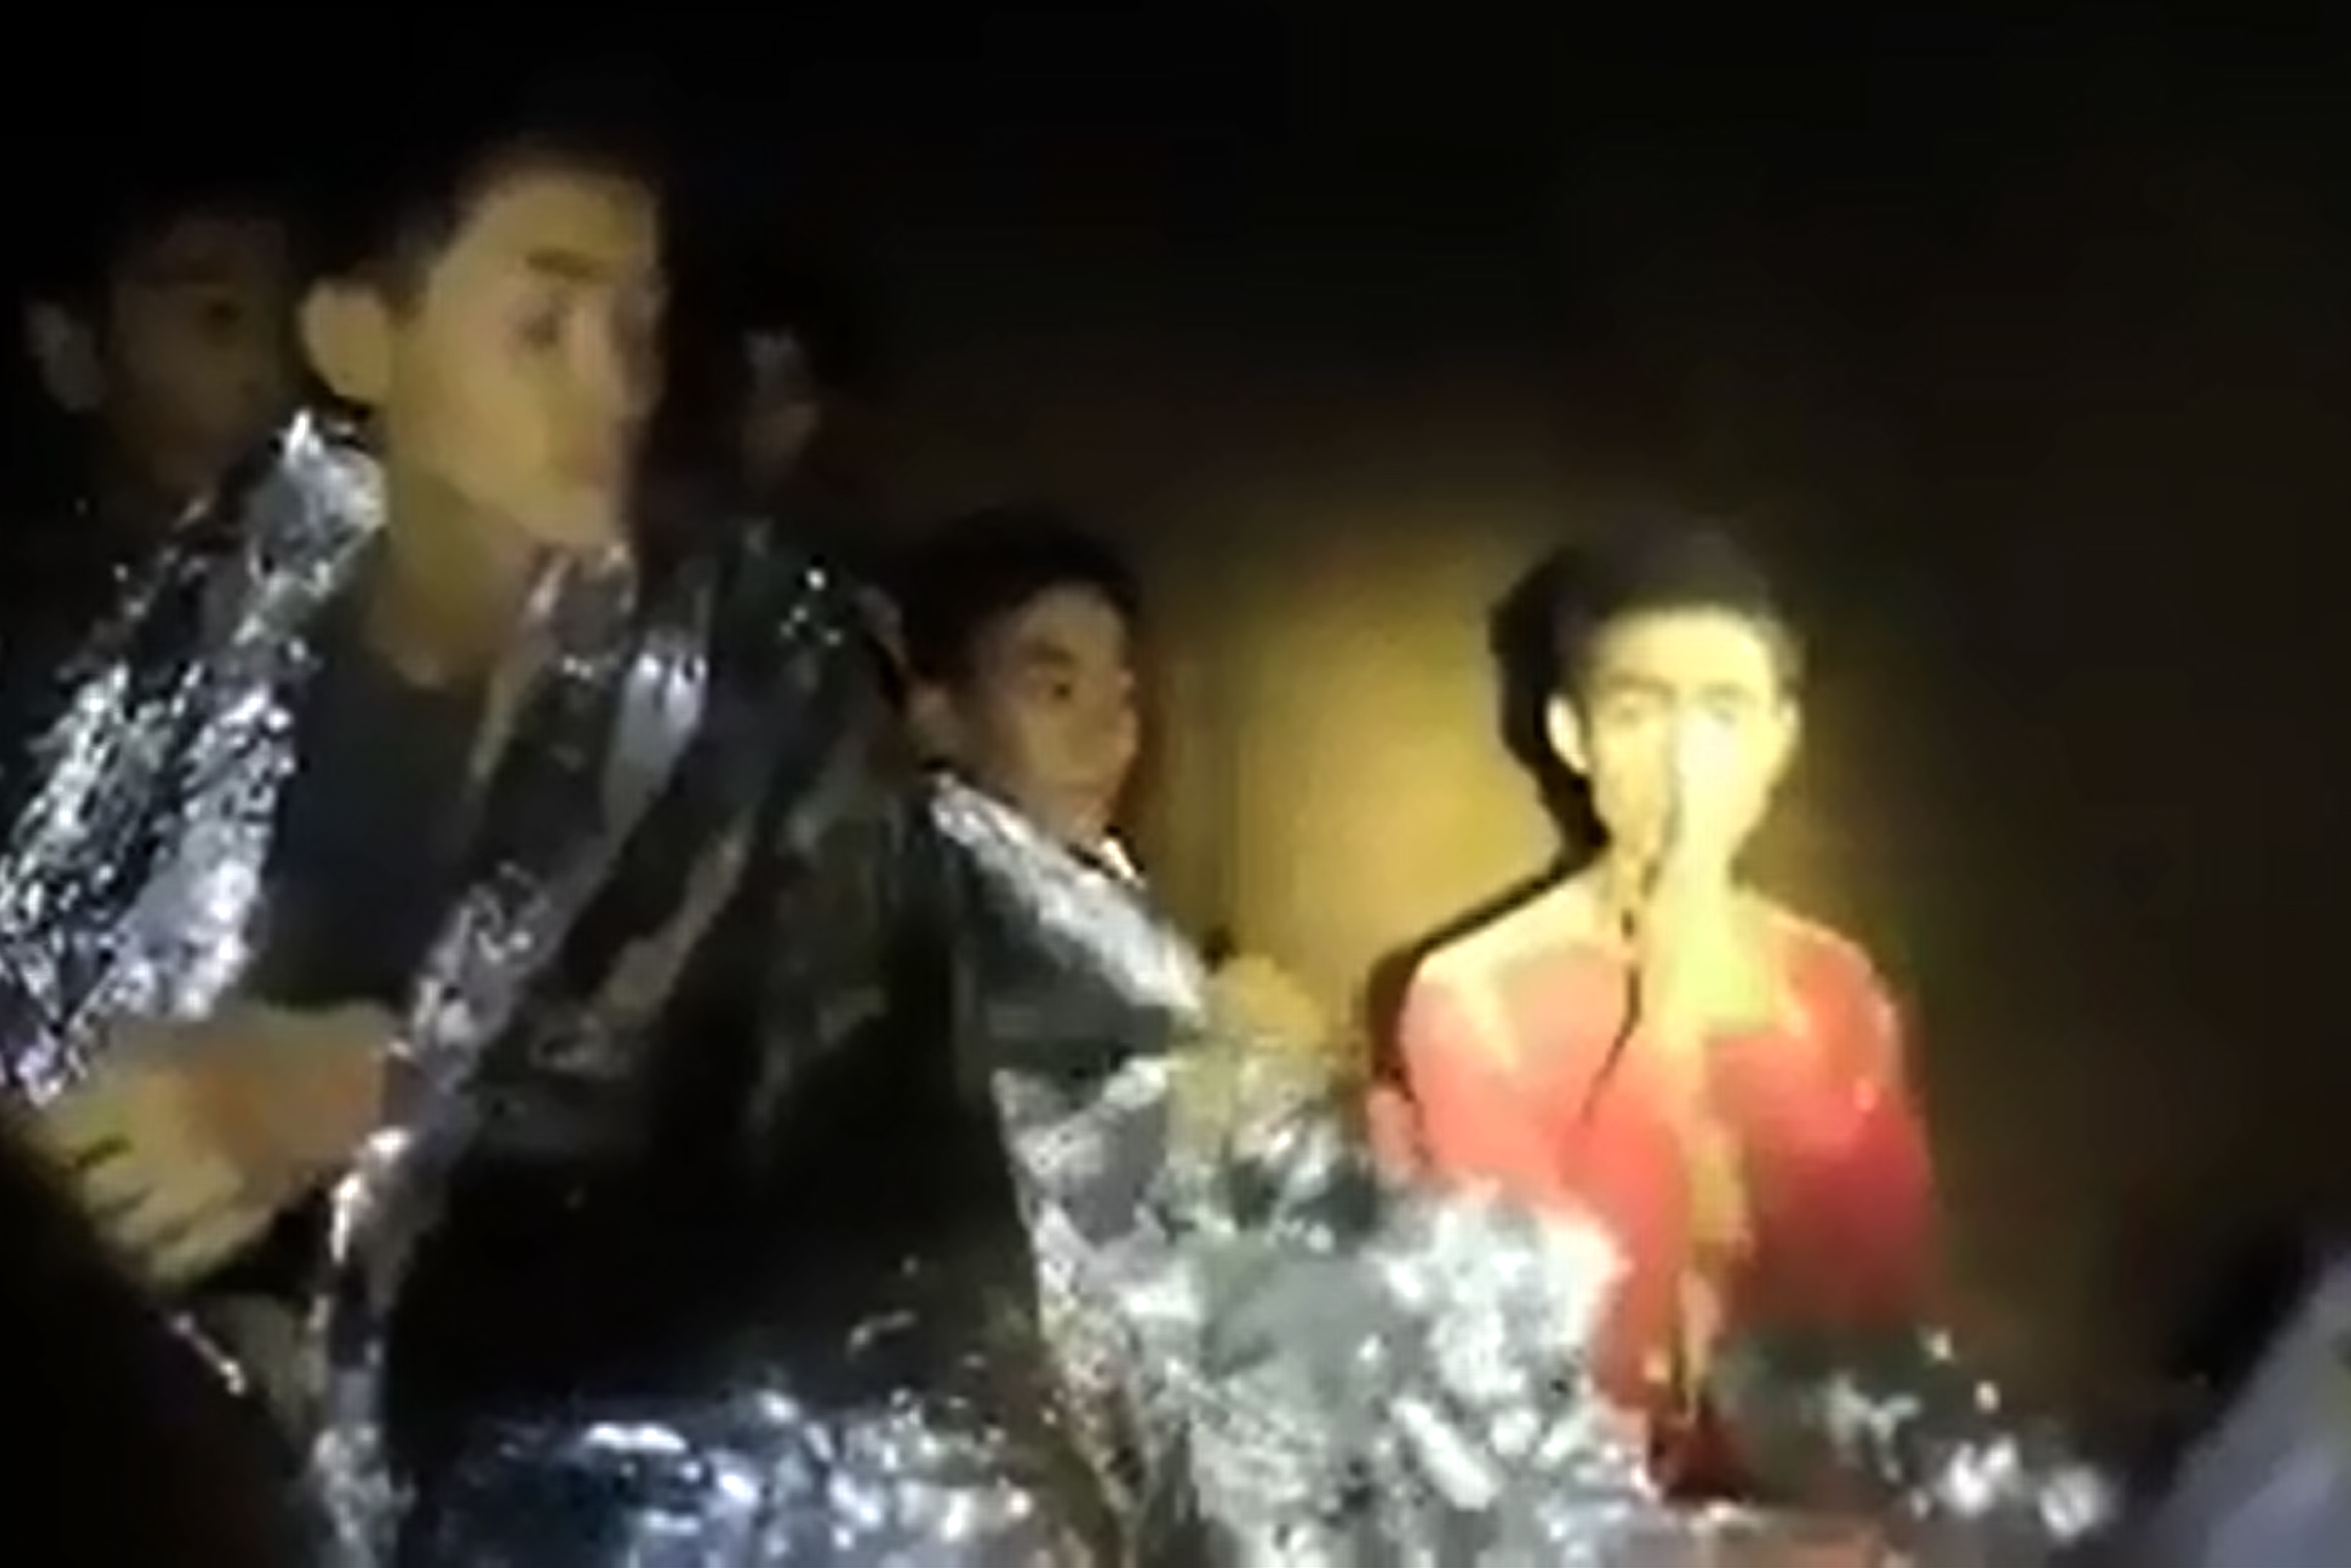 A barlangban rekedt thai gyerekek szülei azt üzenték a fociedzőnek, hogy ne vádolja magát